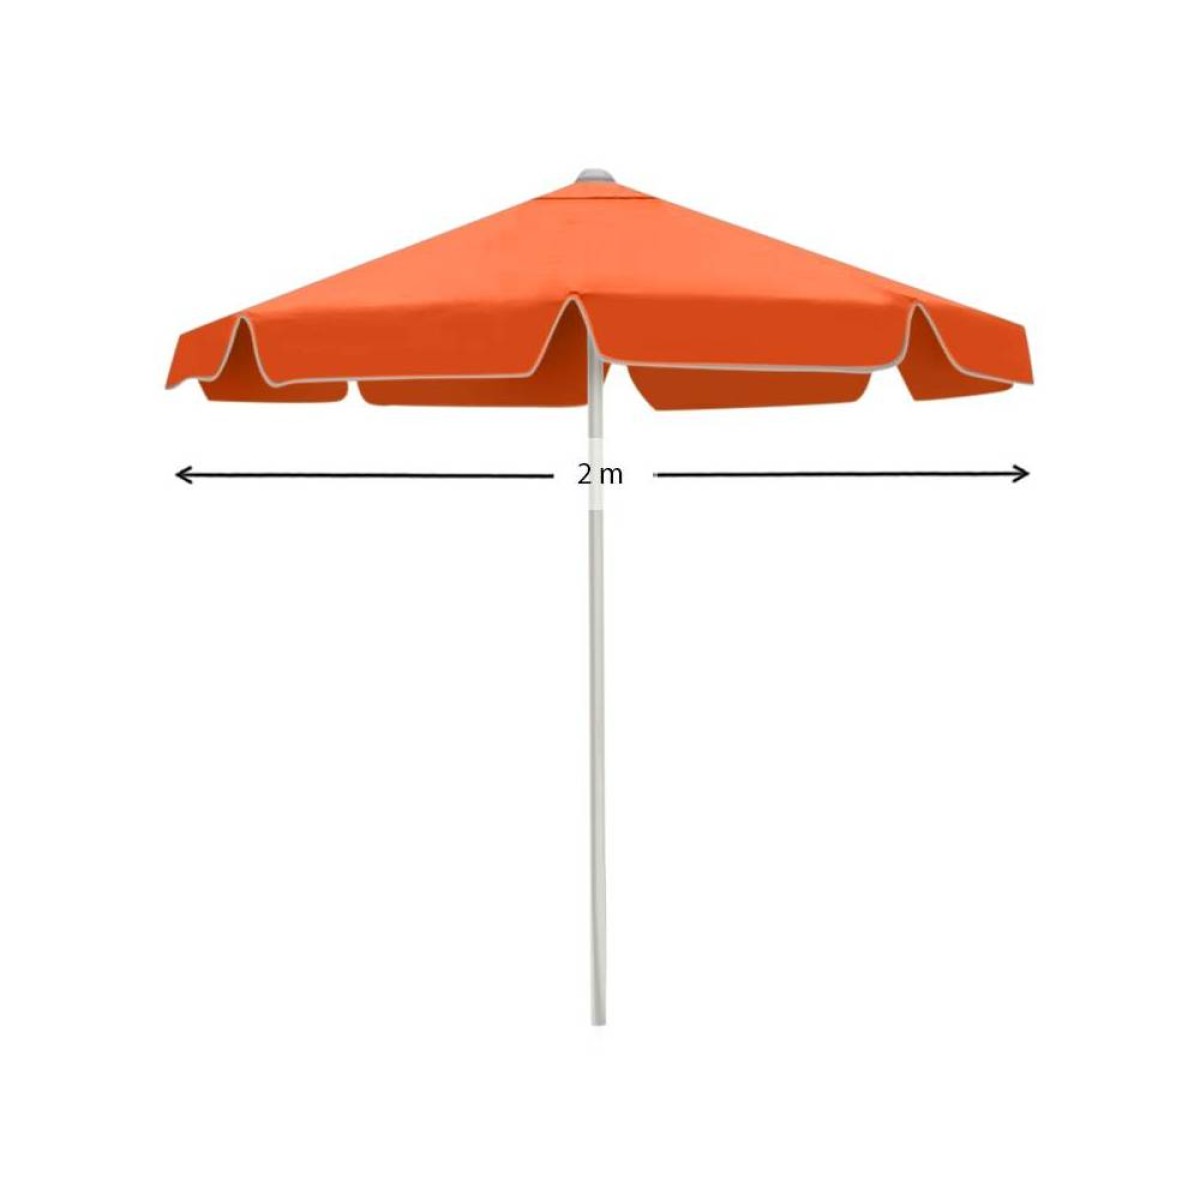 Ομπρέλα μεταλλική επαγγελματική σε πορτοκαλί χρώμα Ø2m